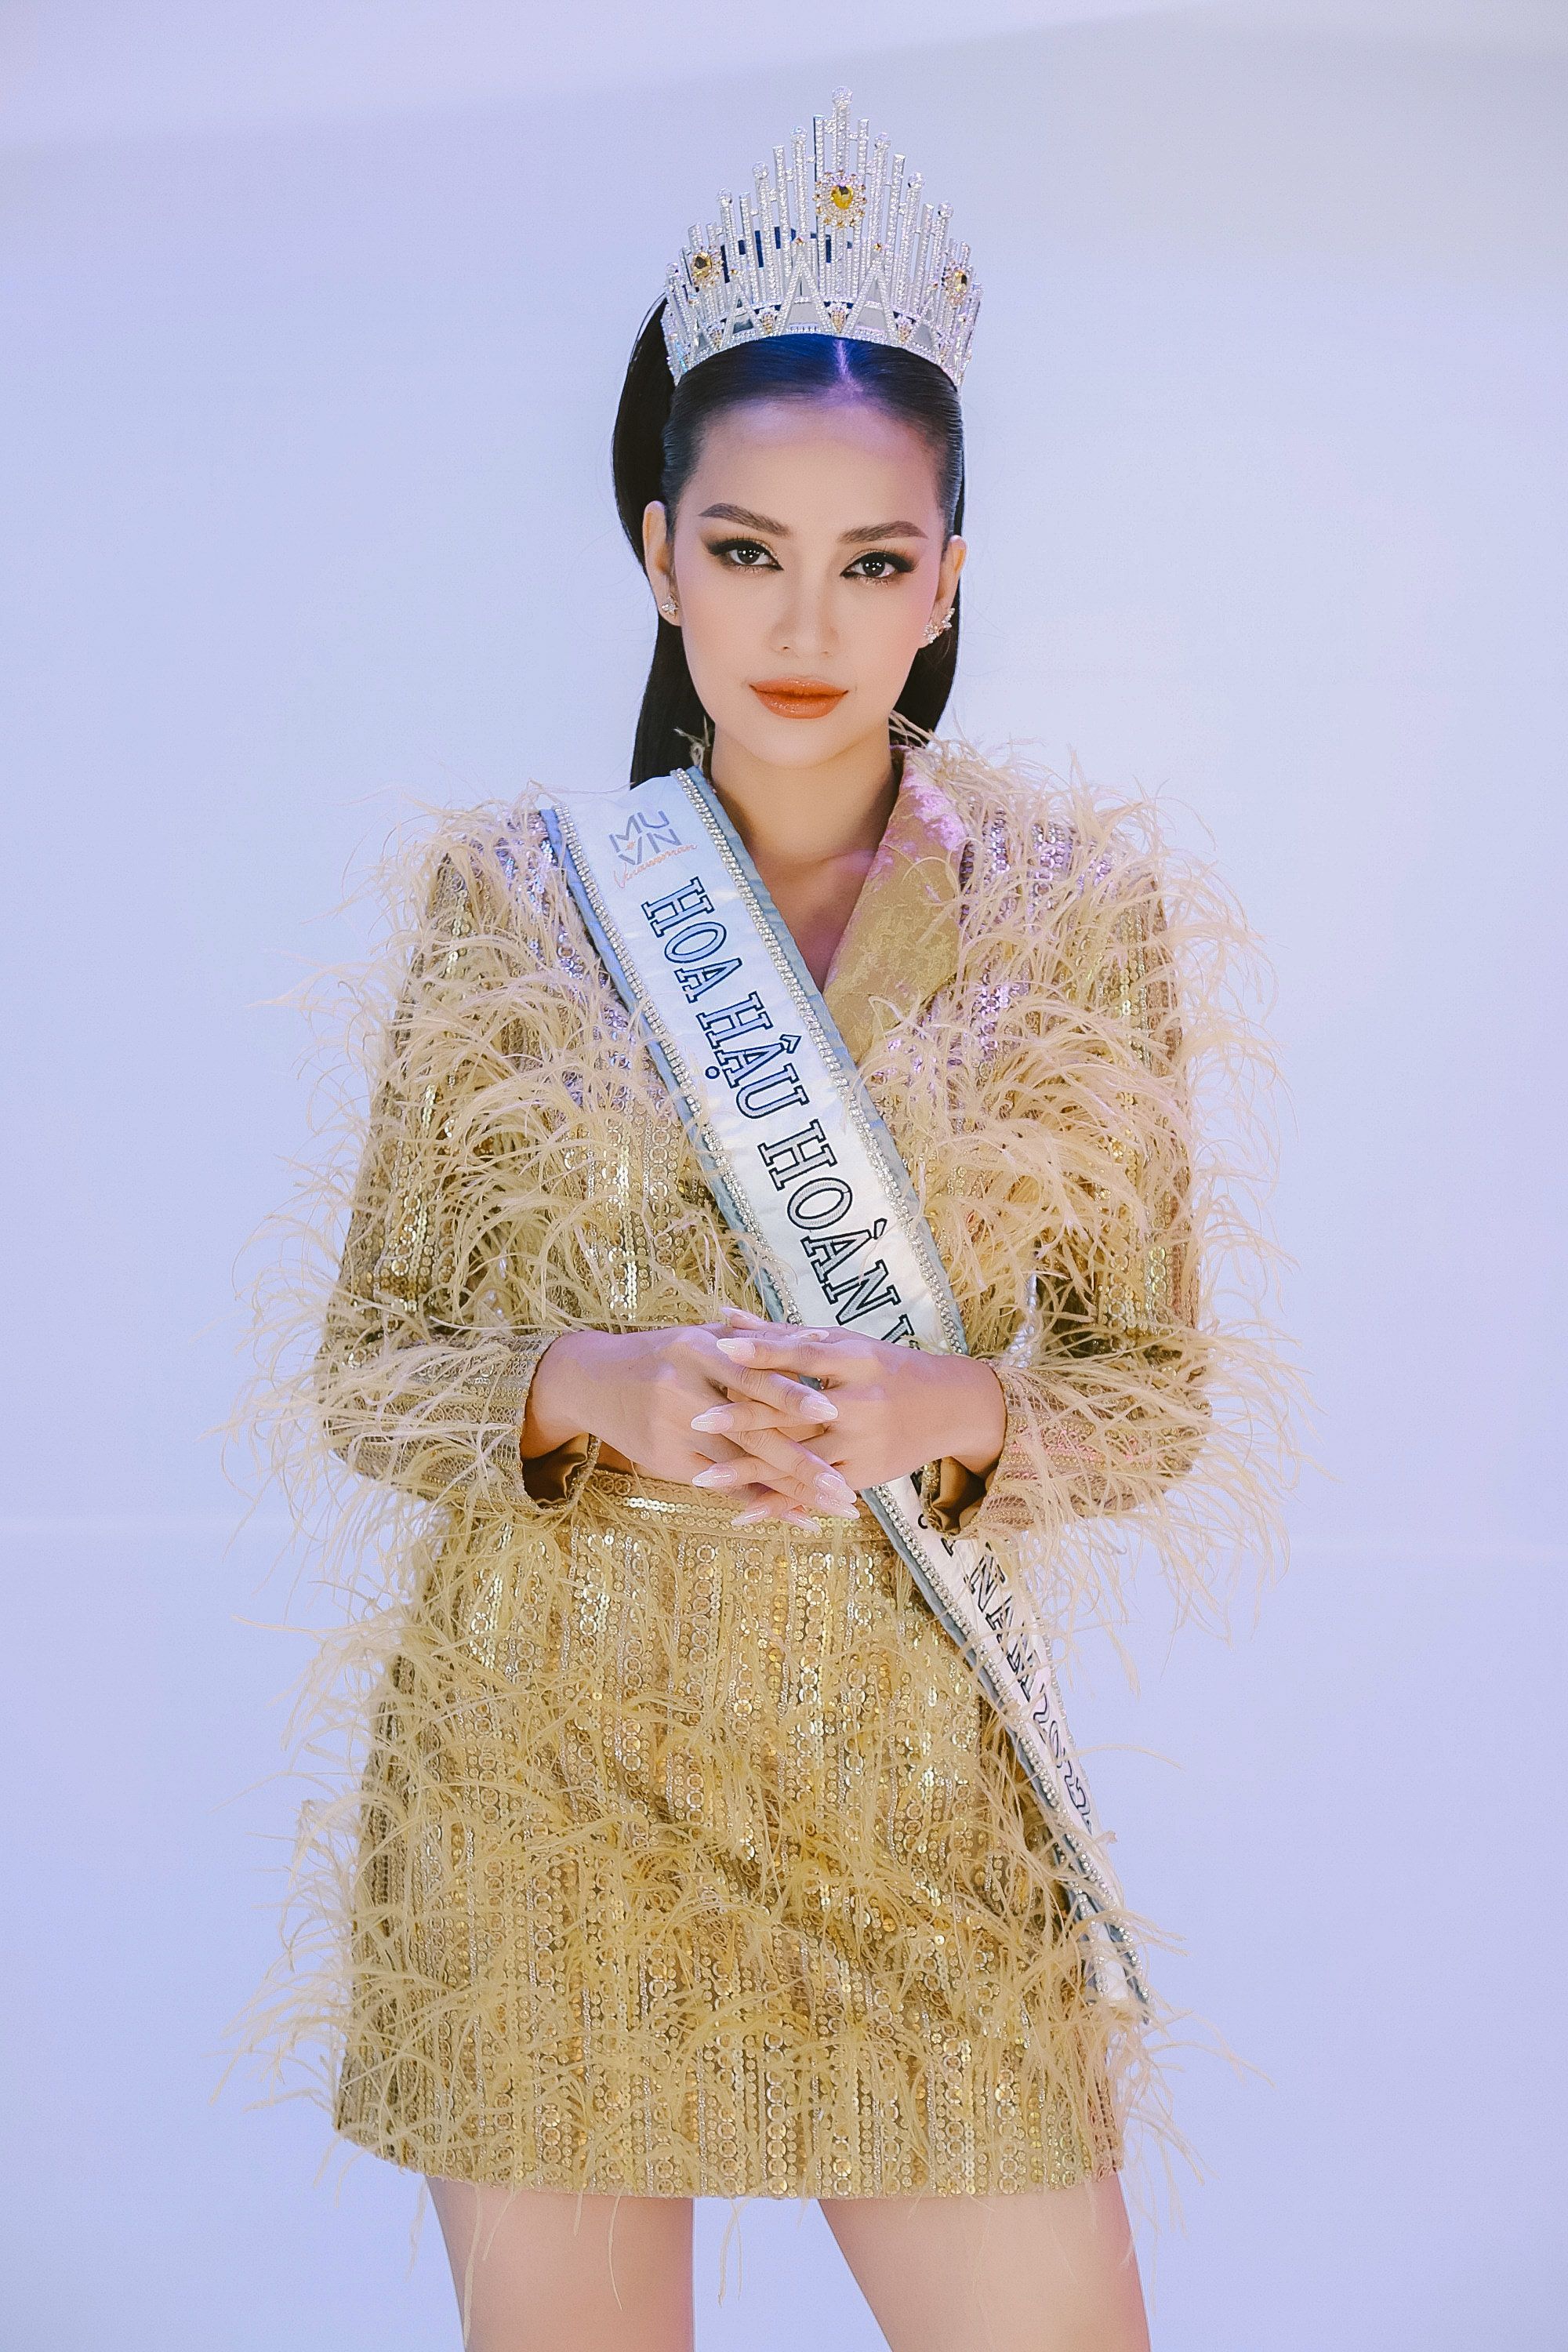 Hoa hậu Hoàn vũ Việt Nam - Ngọc Châu hé lộ tính cách thật: Dễ nổi nóng, hay bị cảm xúc chi phối - Ảnh 2.